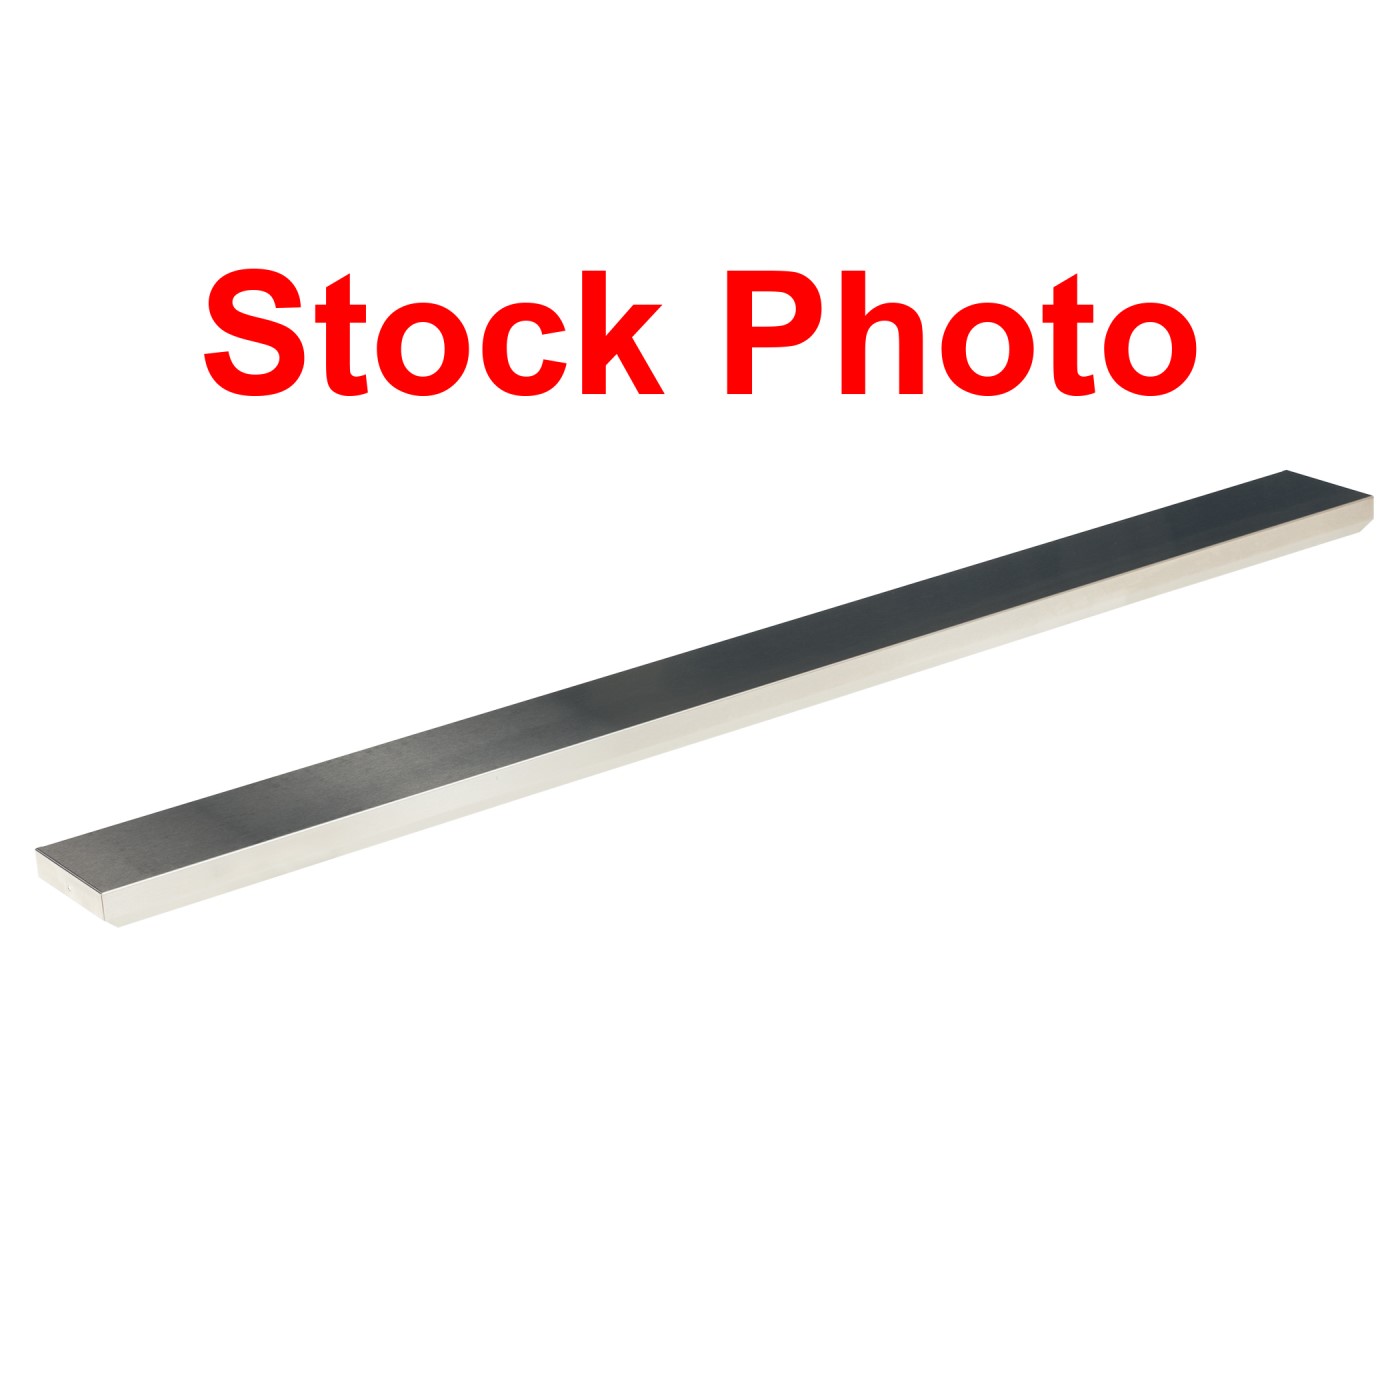 Scratch & Dent A4 Stainless Steel Work shelf